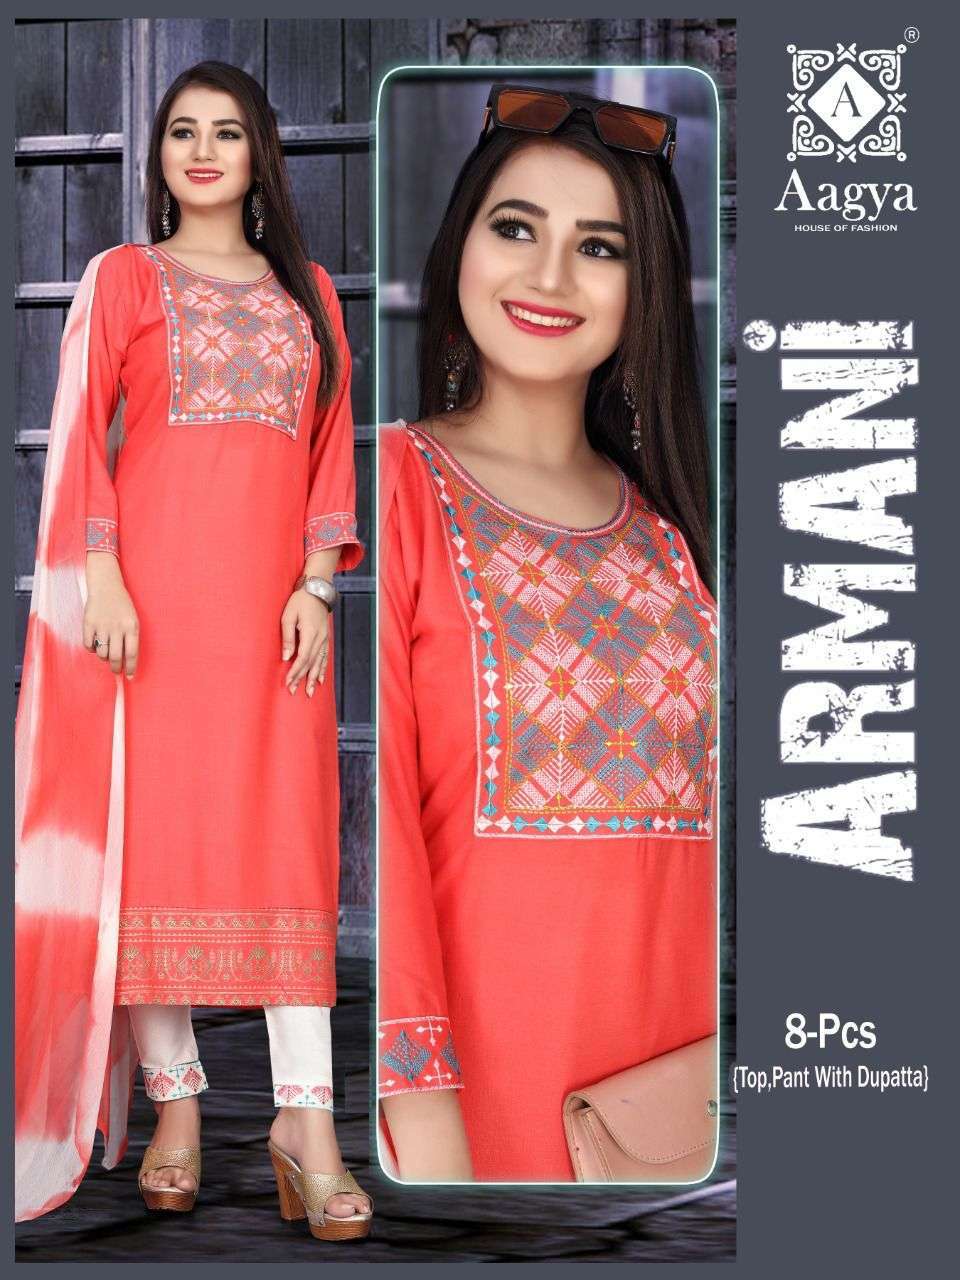 aagya armani pant vol 1 series 001-008 rayon slub readymade suit 